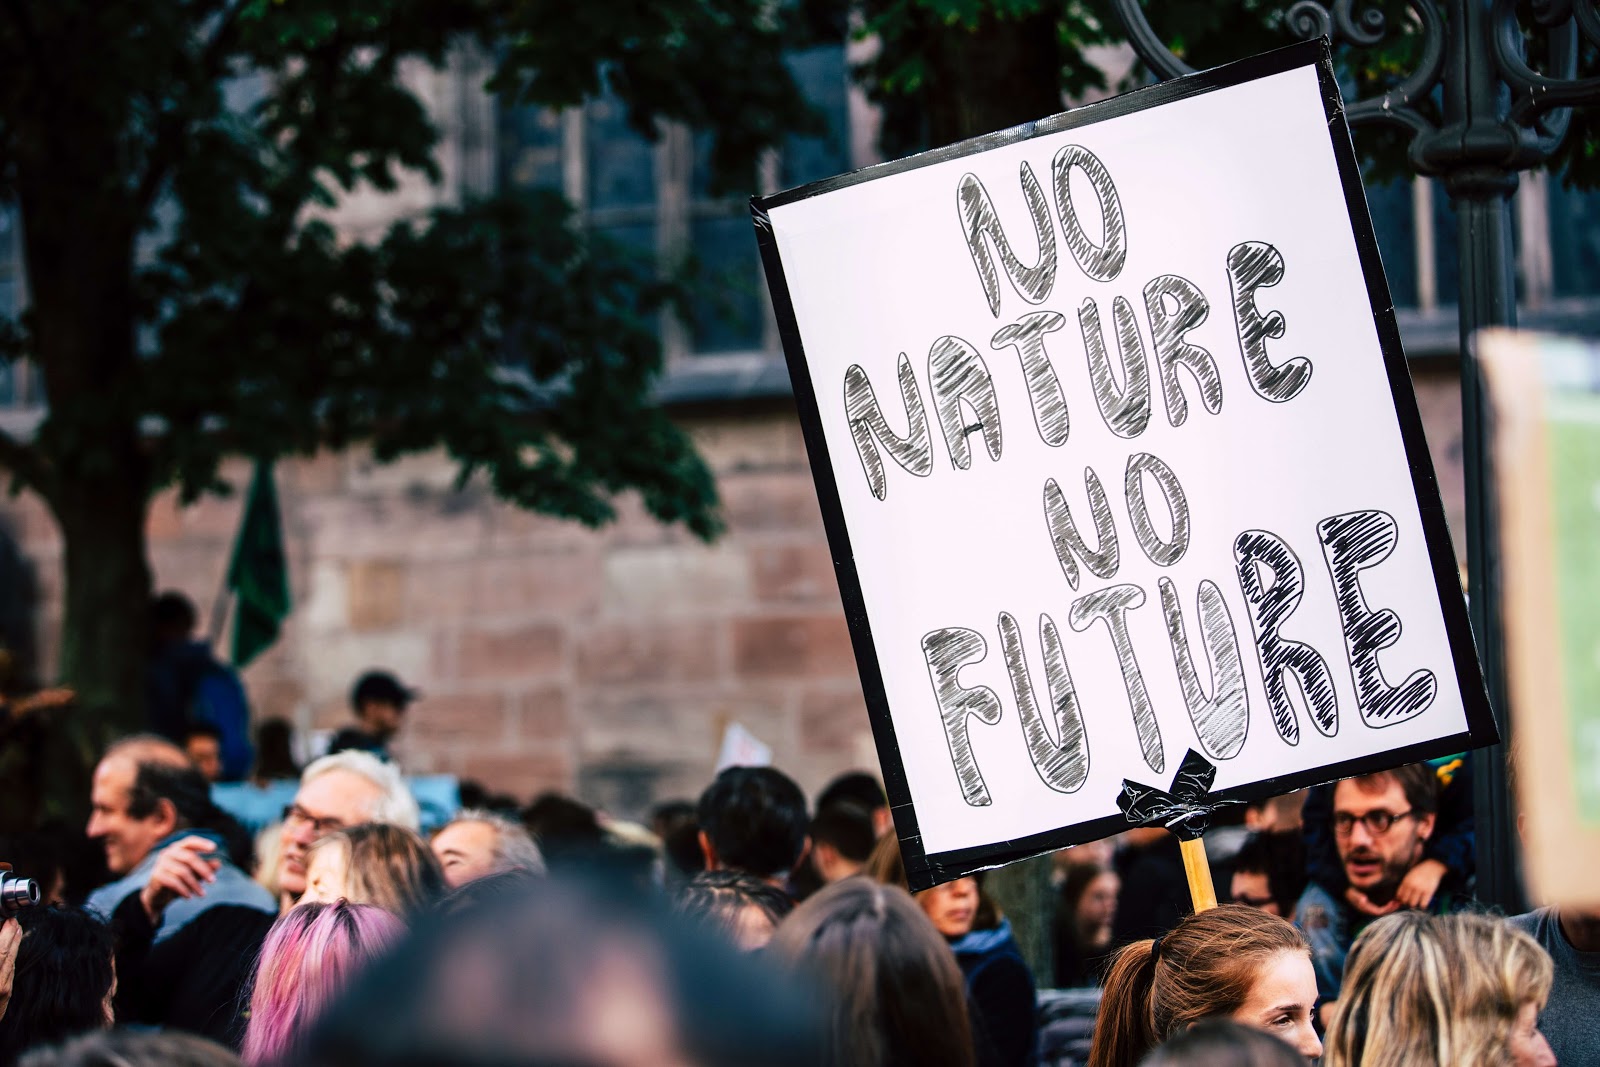 Demonstranten mit einem Schild mit der Aufschrift "Ohne Natur keineZukunft"